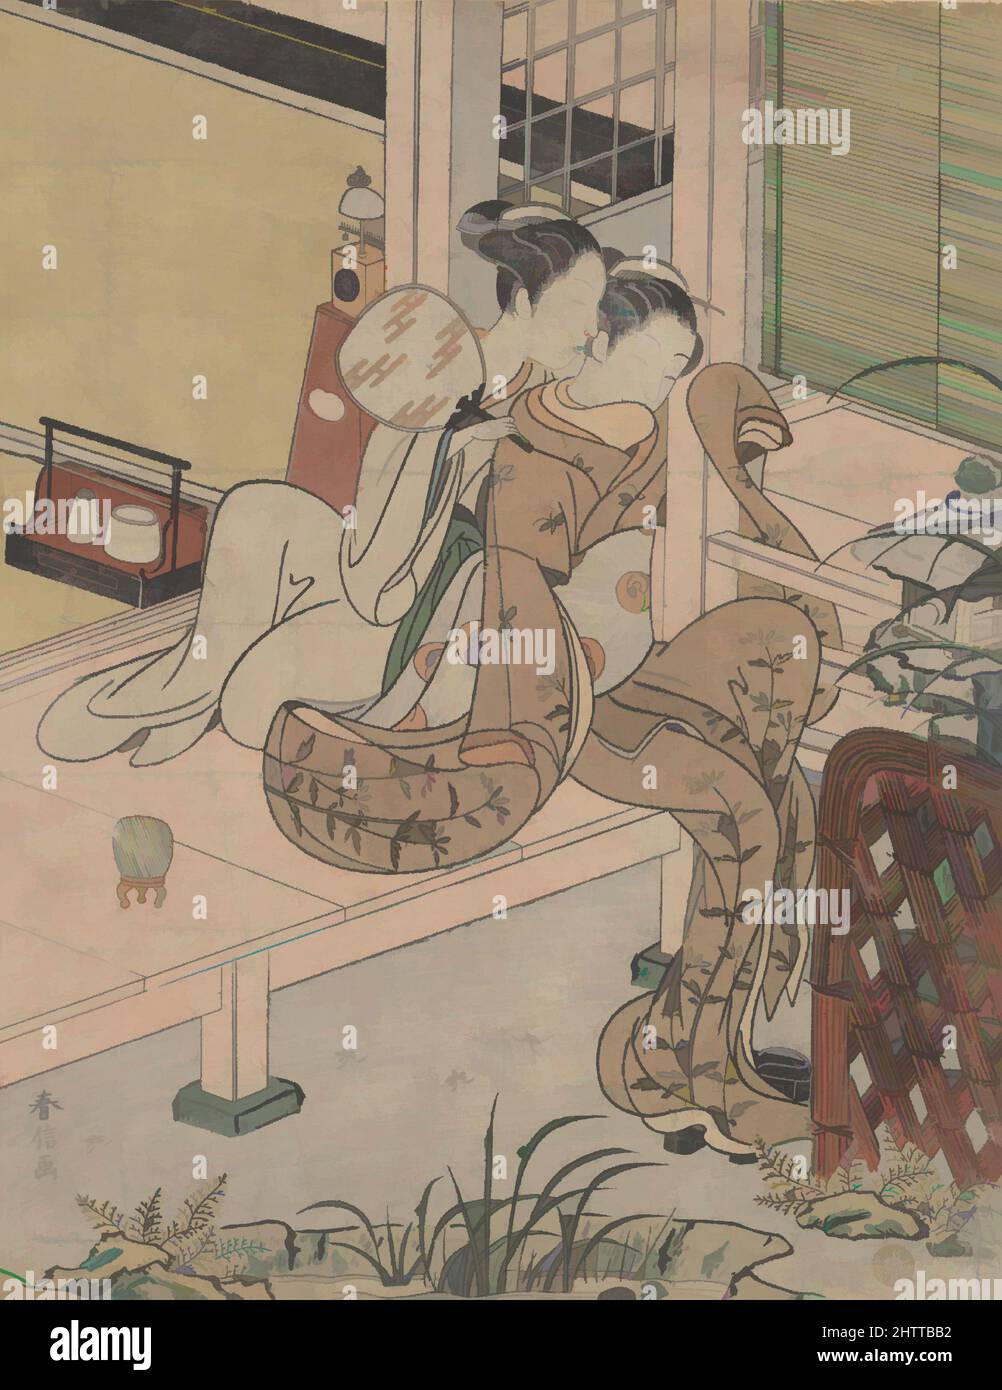 Art inspiré par les commérages, période Edo (1615–1868), env. 1767, Japon, imprimé polychrome sur bois ; encre et couleur sur papier, 10 1/4 x 7 1/4 po. (26 x 18,4 cm), Prints, Suzuki Harunobu (japonais, 1725–1770), dans la vision artistique de Harunobu, la vie intérieure est définie par sa relation avec, œuvres classiques modernisées par Artotop avec un peu de modernité. Formes, couleur et valeur, impact visuel accrocheur sur l'art émotions par la liberté d'œuvres d'art d'une manière contemporaine. Un message intemporel qui cherche une nouvelle direction créative. Artistes qui se tournent vers le support numérique et créent le NFT Artotop Banque D'Images